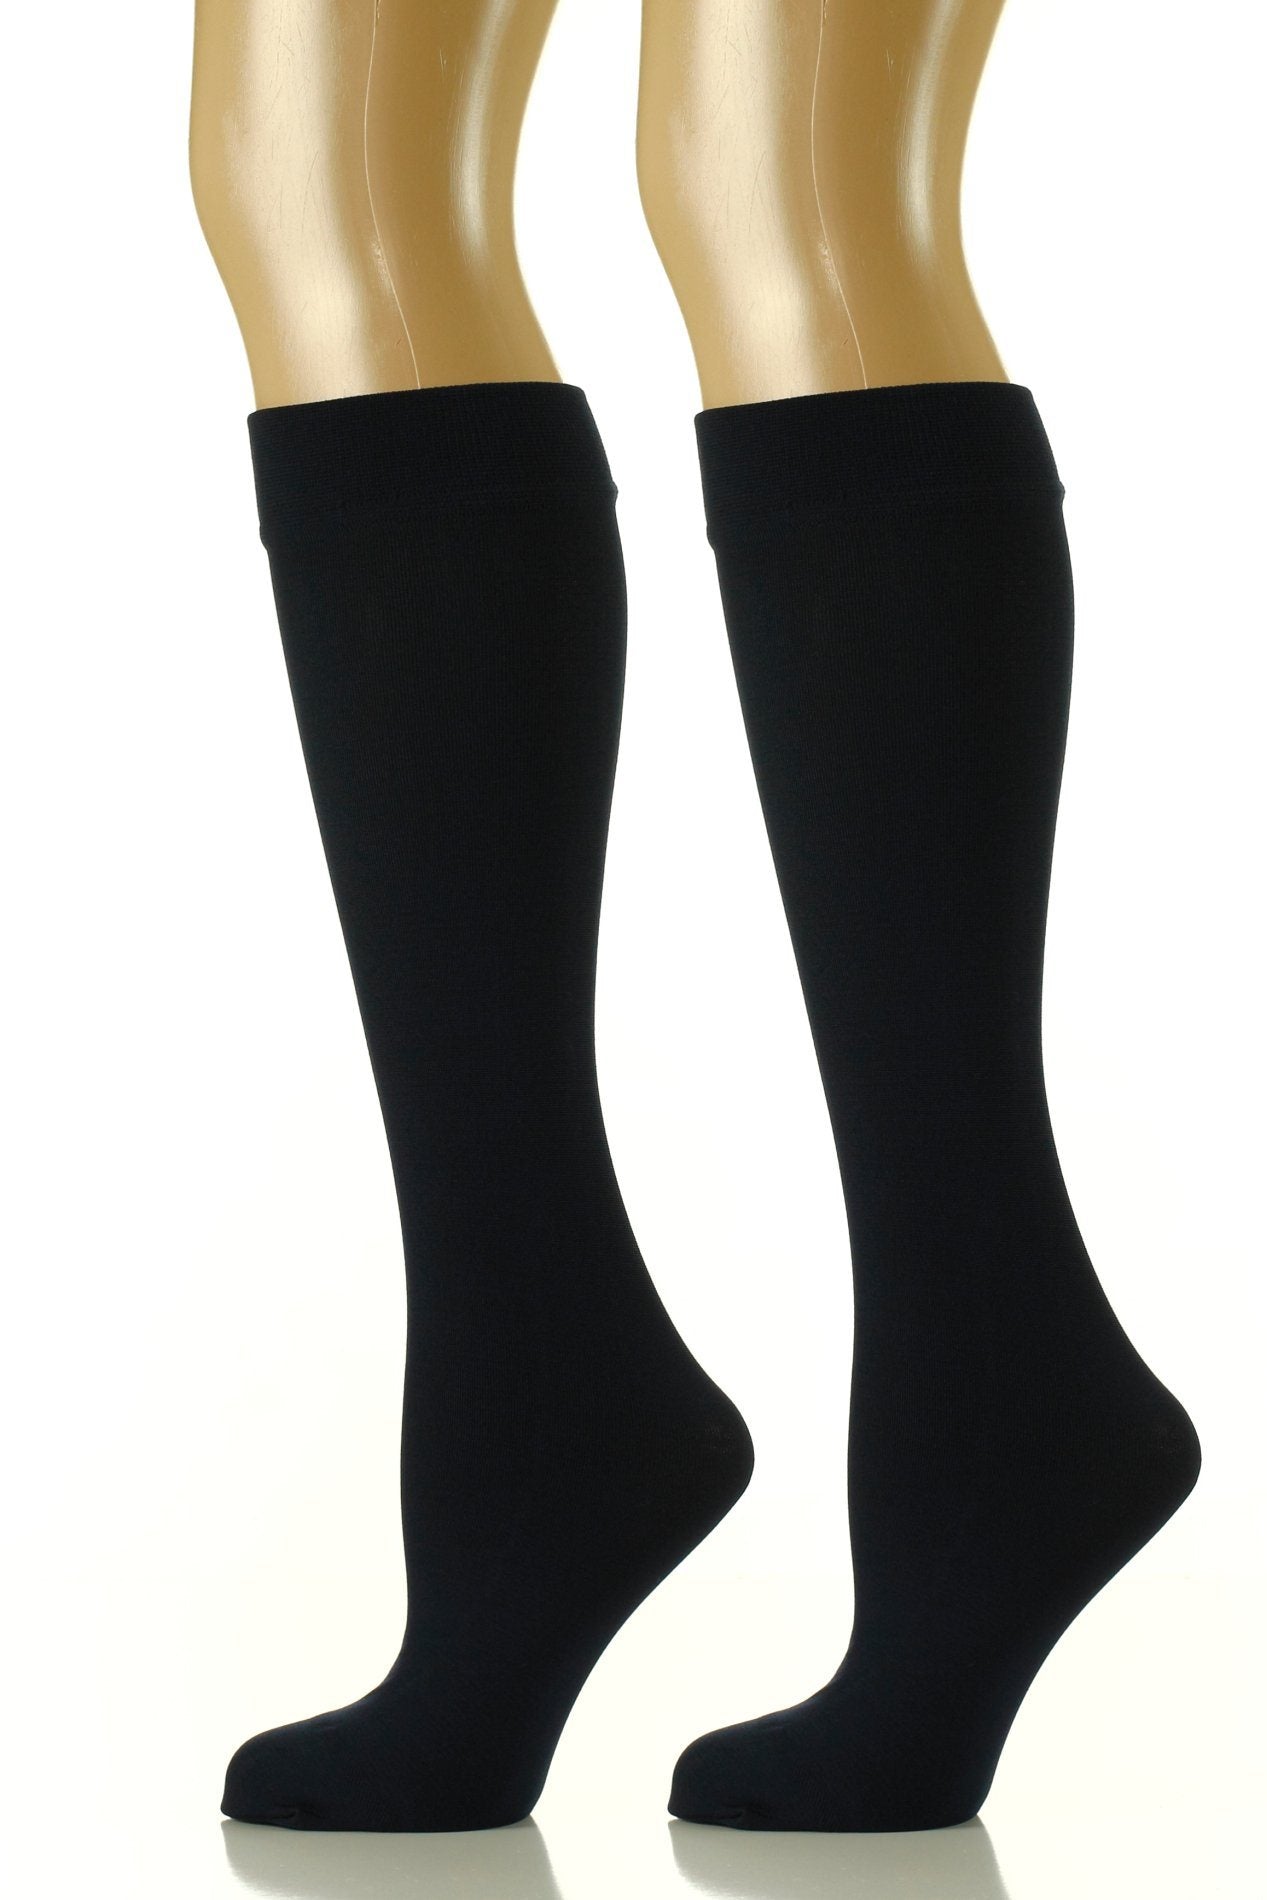 Noble Mount Womens Premium Fleece Lined Trouser Socks 2-Pack (Size 9-11)